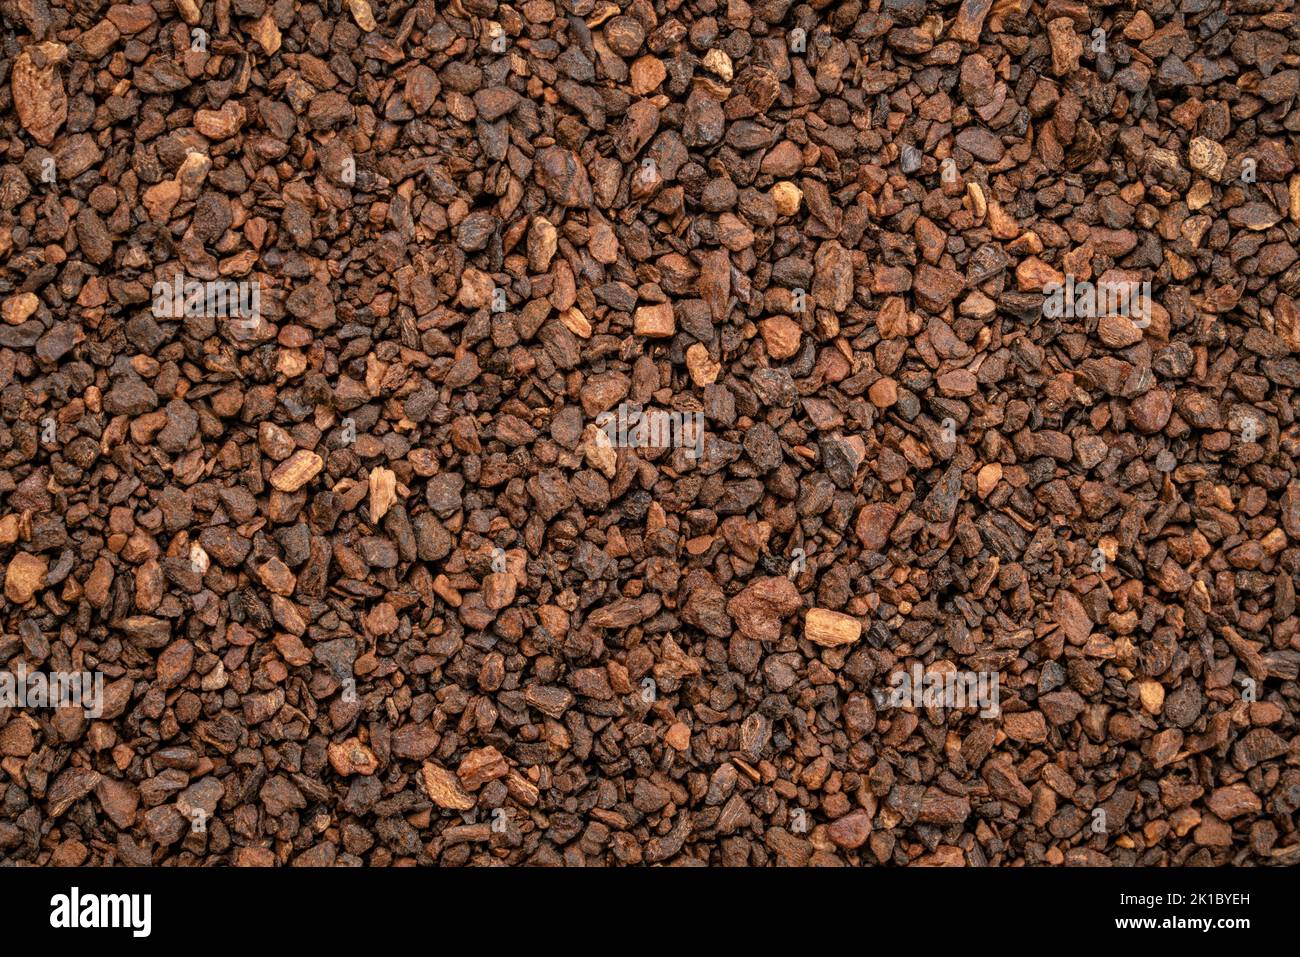 Macro fondo y textura de gránulos de achicoria a menudo utilizados con o como sustituto del café, hechos de la raíz de la planta de achicoria, Cichorium int Foto de stock